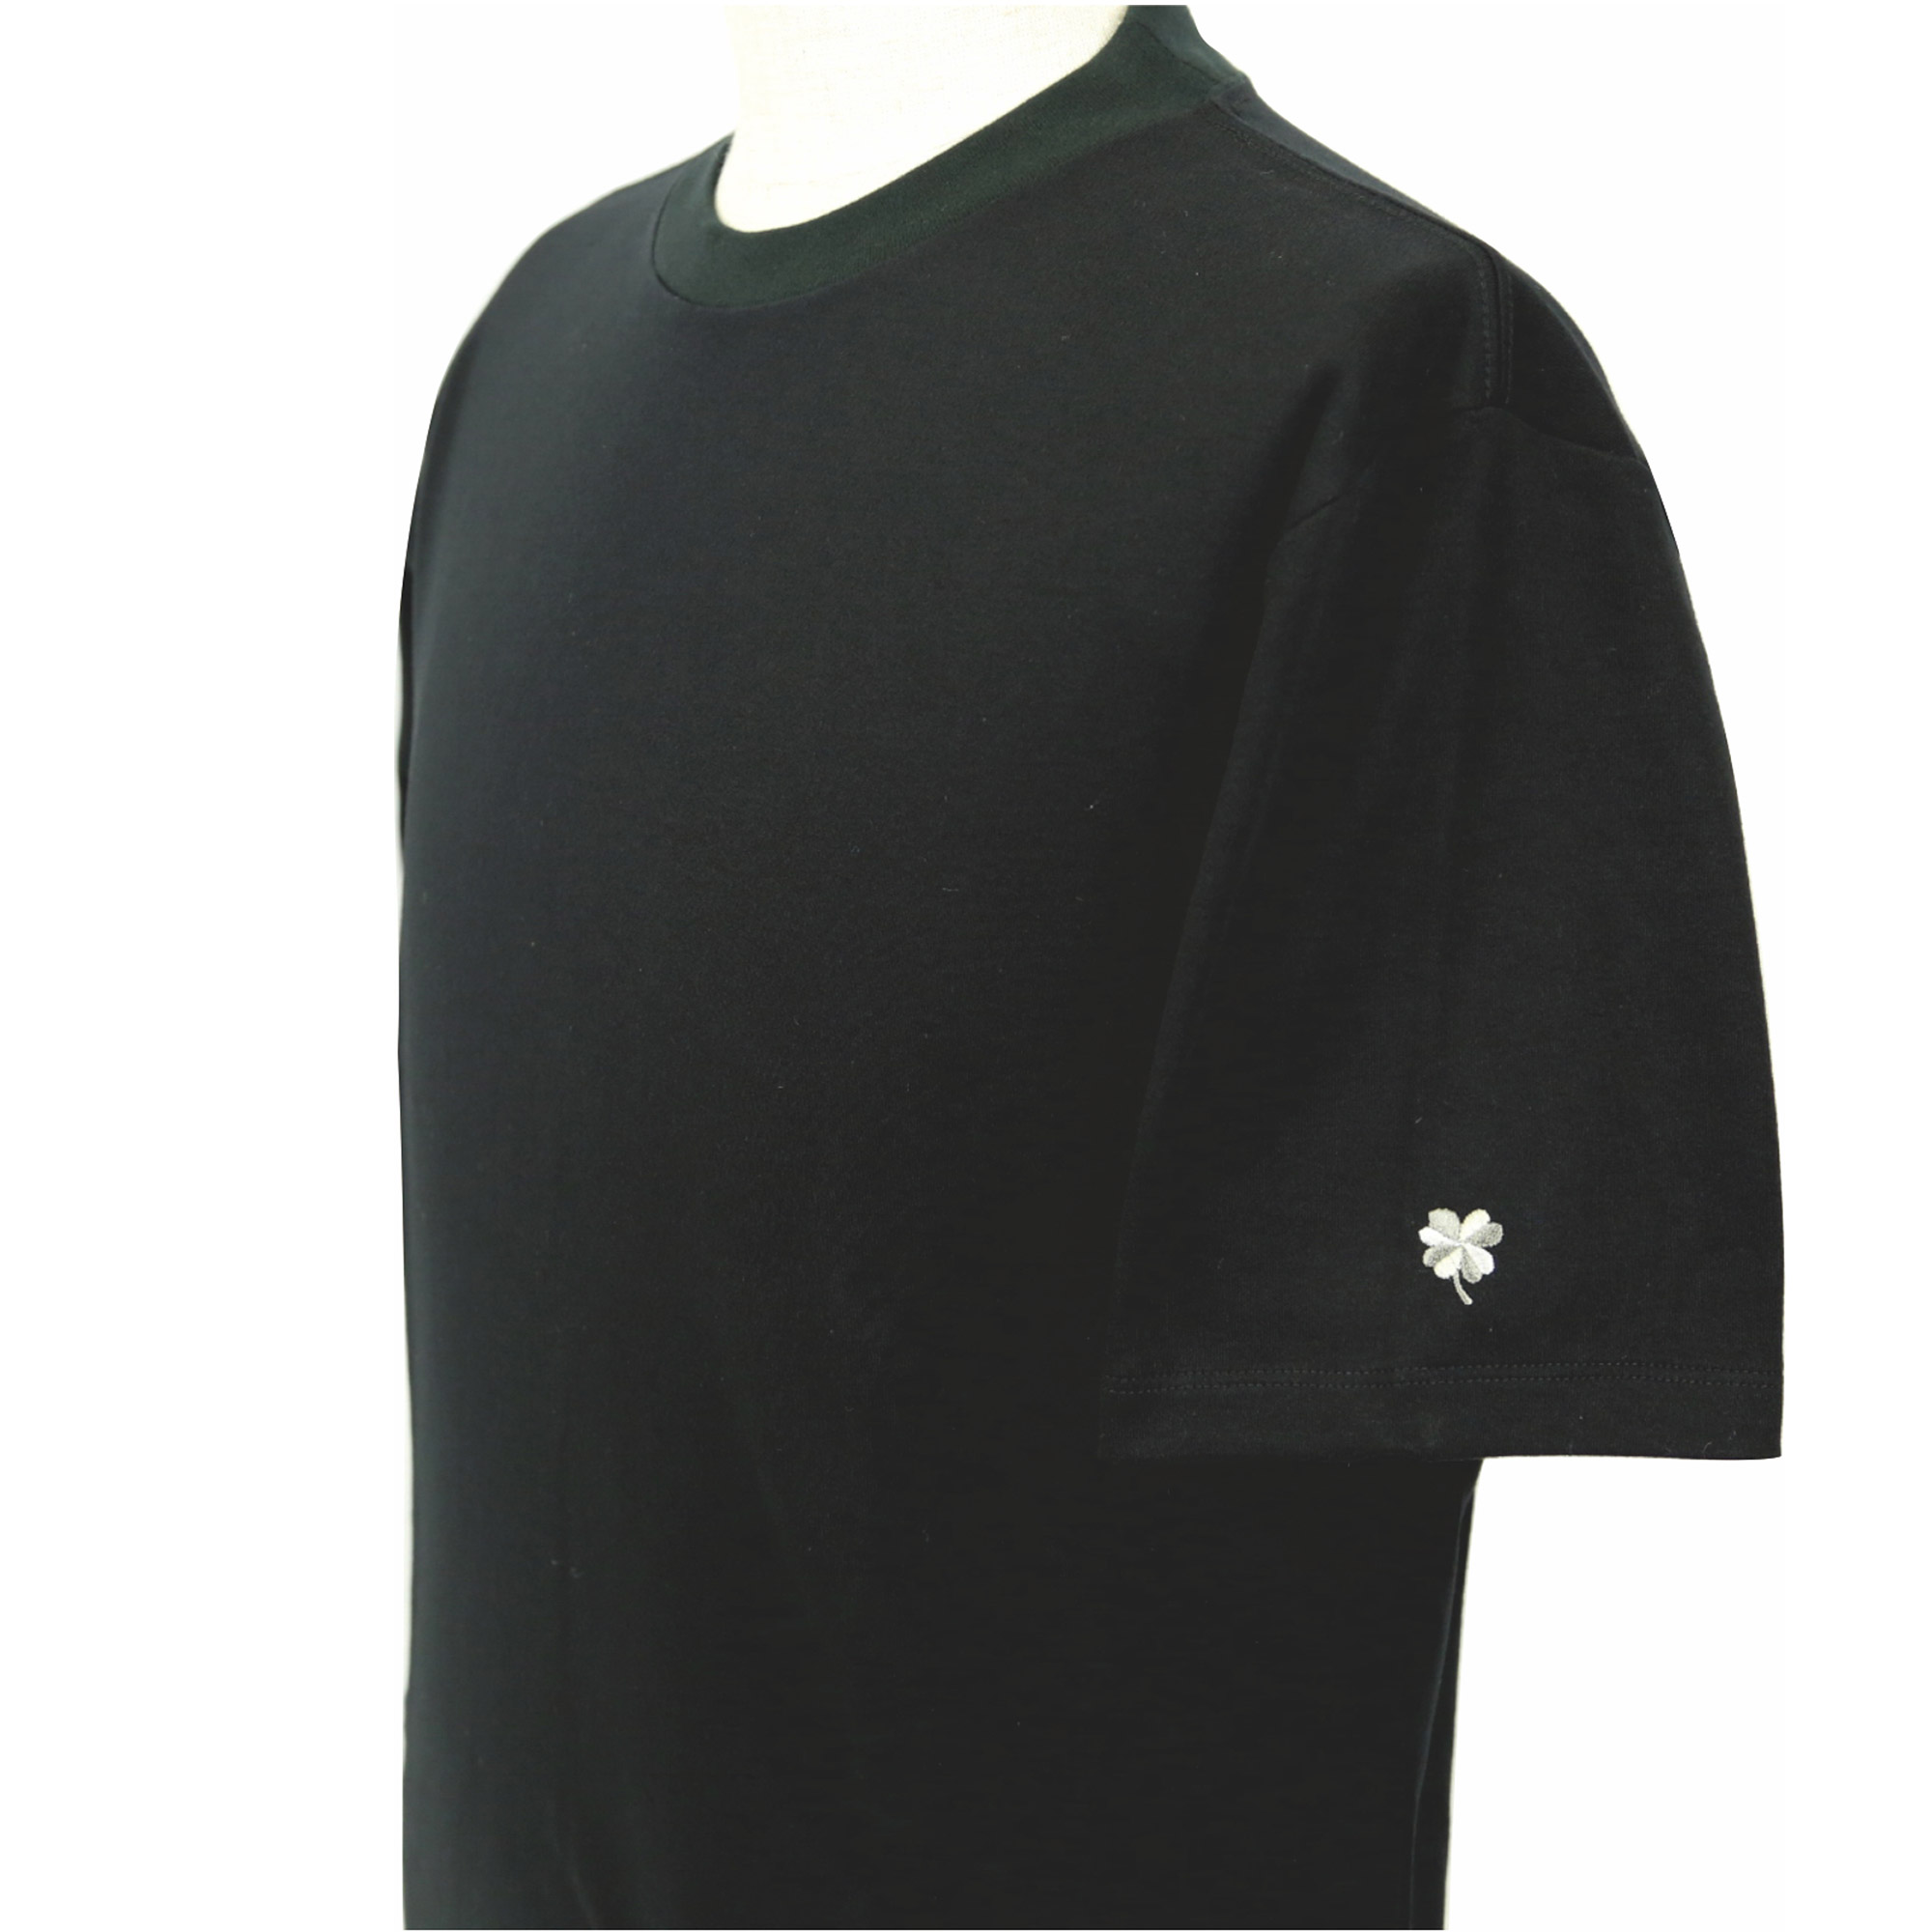 【値下げしました】プレミアムドレス Tシャツ  半袖  袖口刺繍  ブラック  FATTURA  メンズファッション  日本製